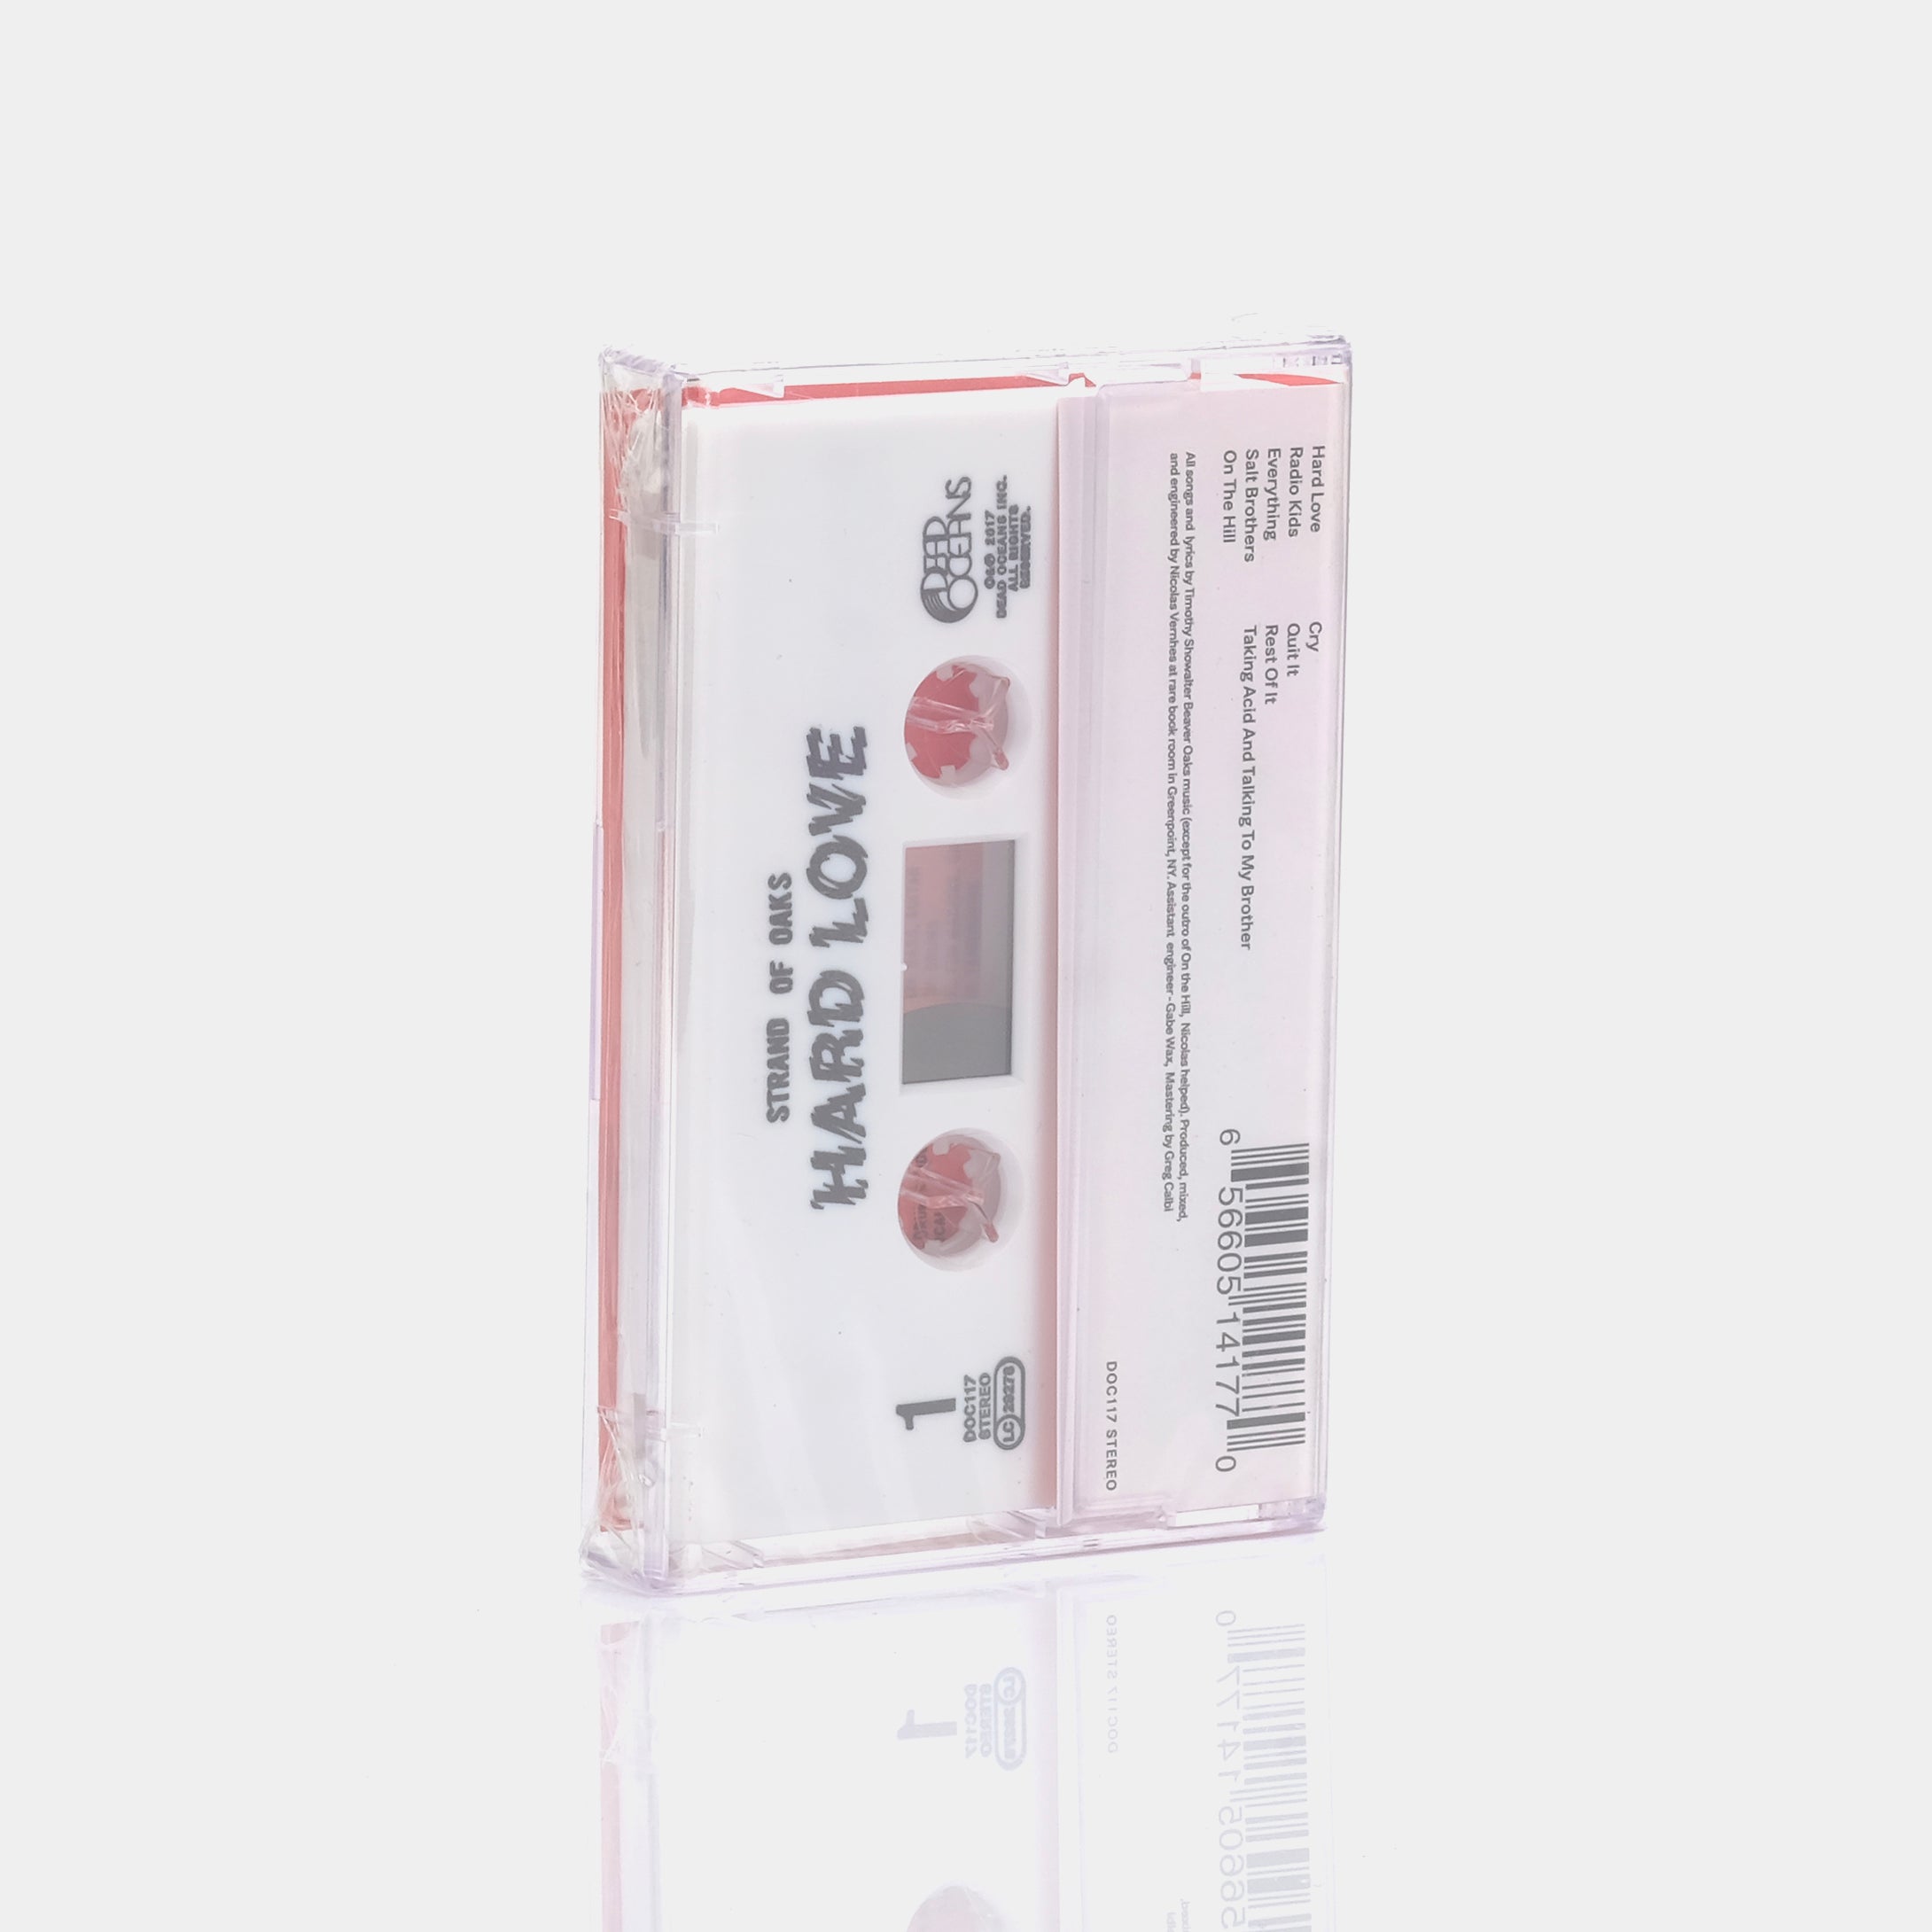 Strand of Oaks - Hard Love Cassette Tape